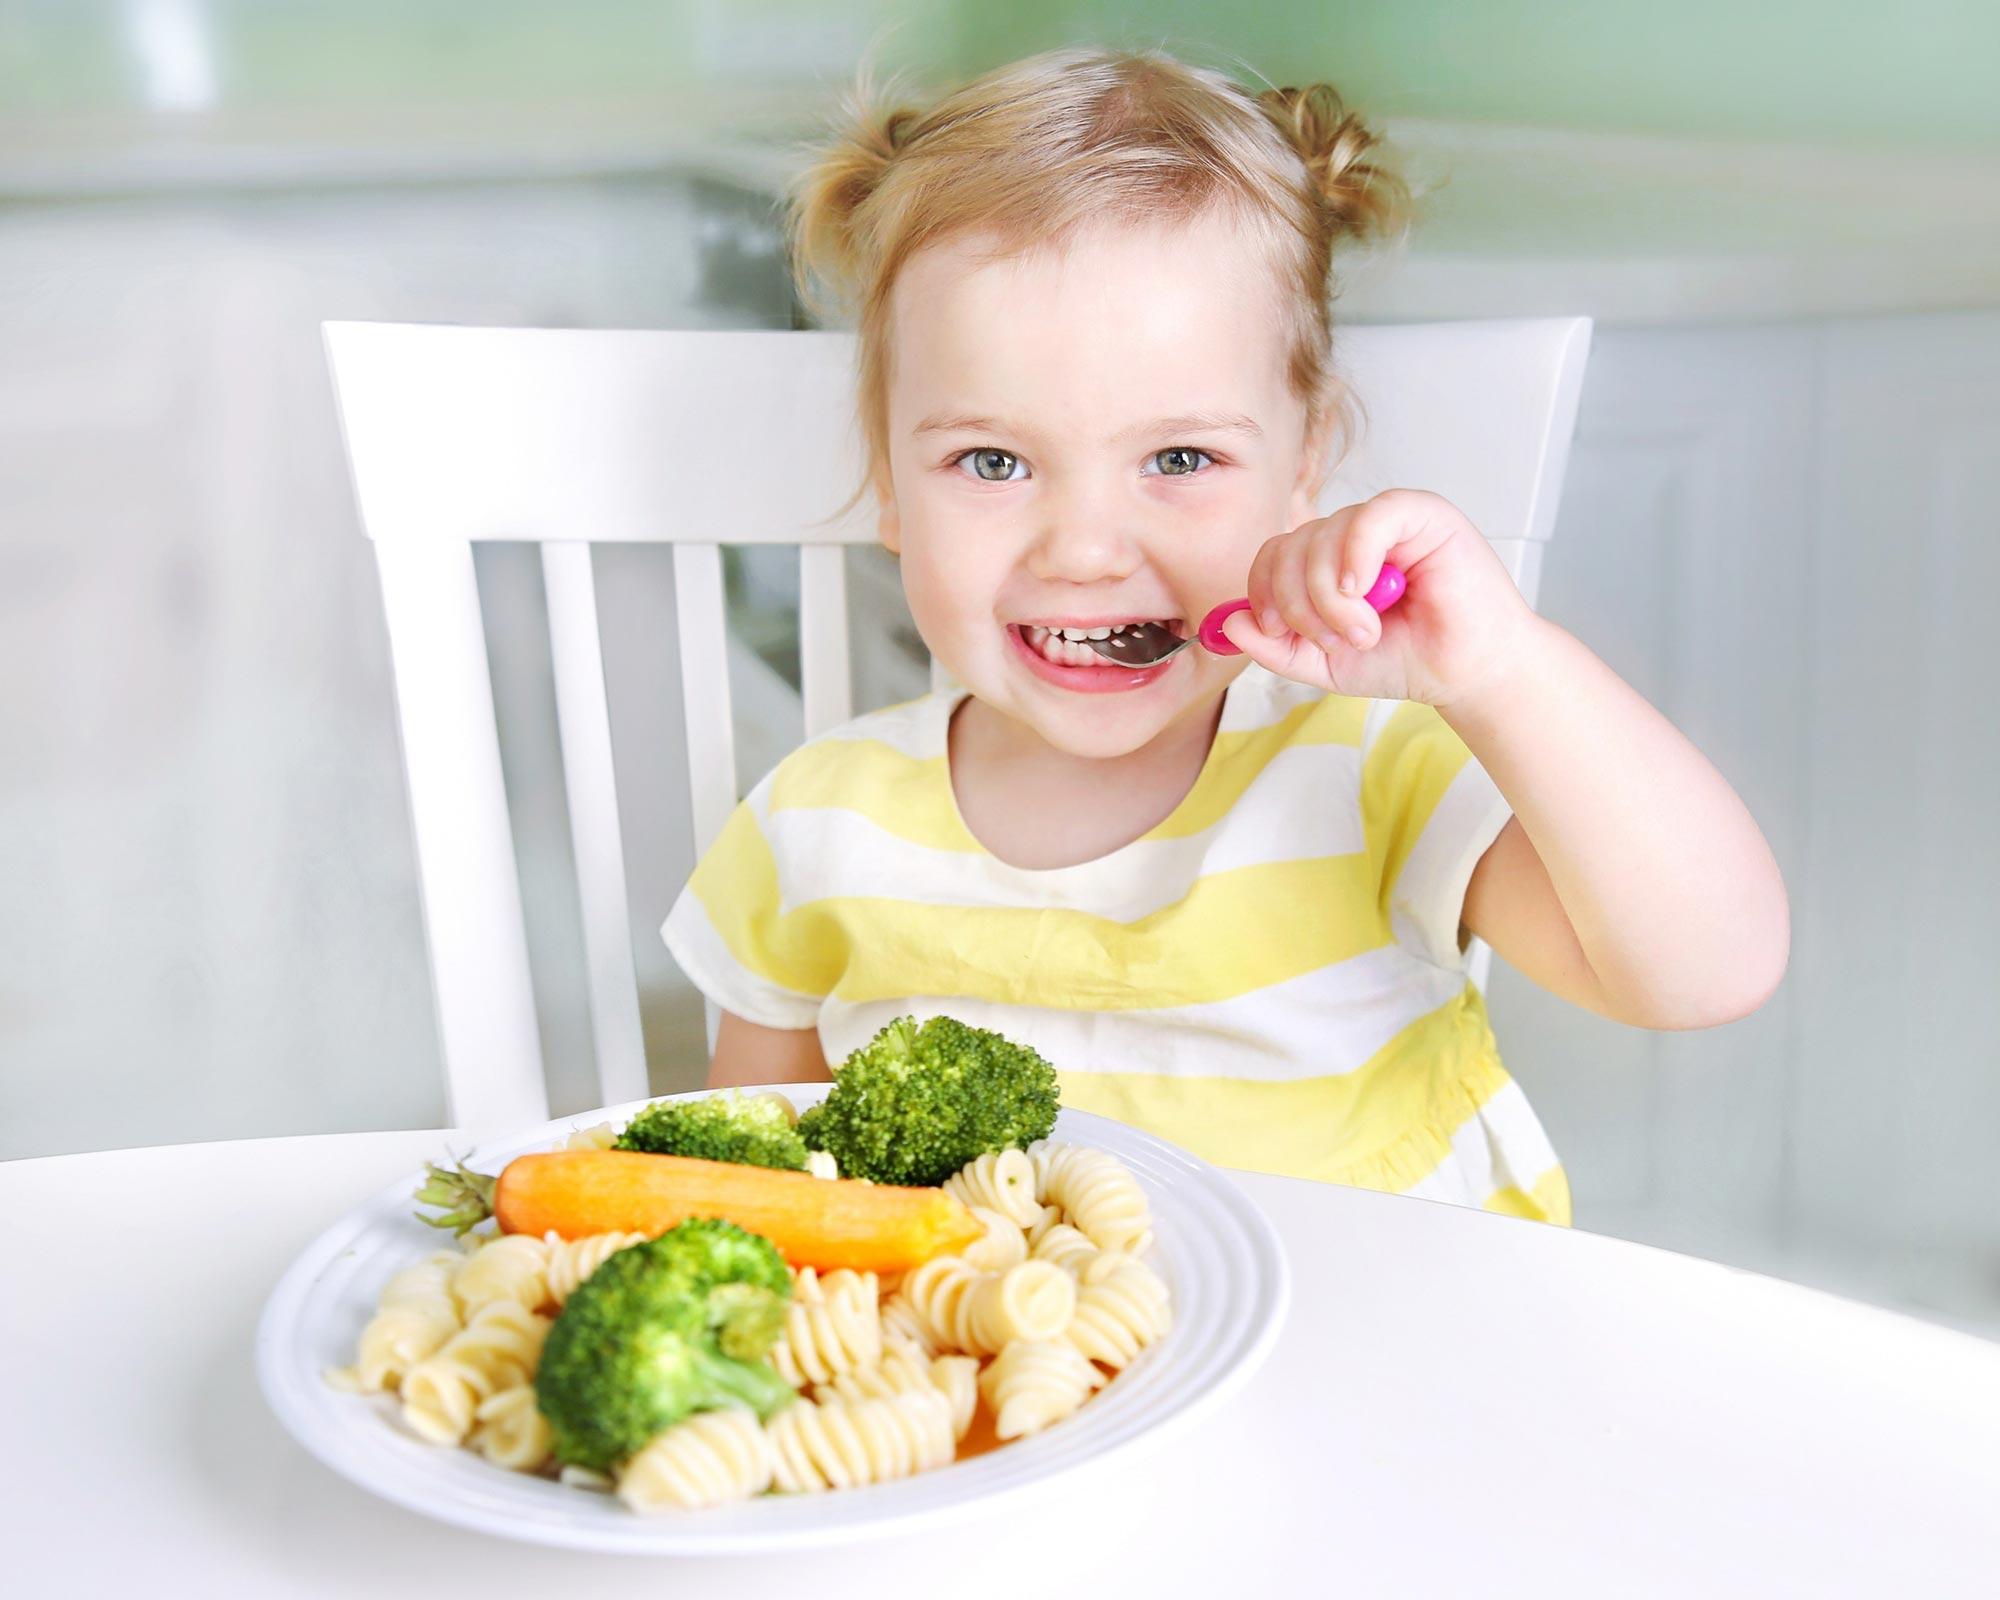 Децата, които ядат растителна диета, имат сходен растеж и хранене в сравнение с техните връстници, които ядат месо